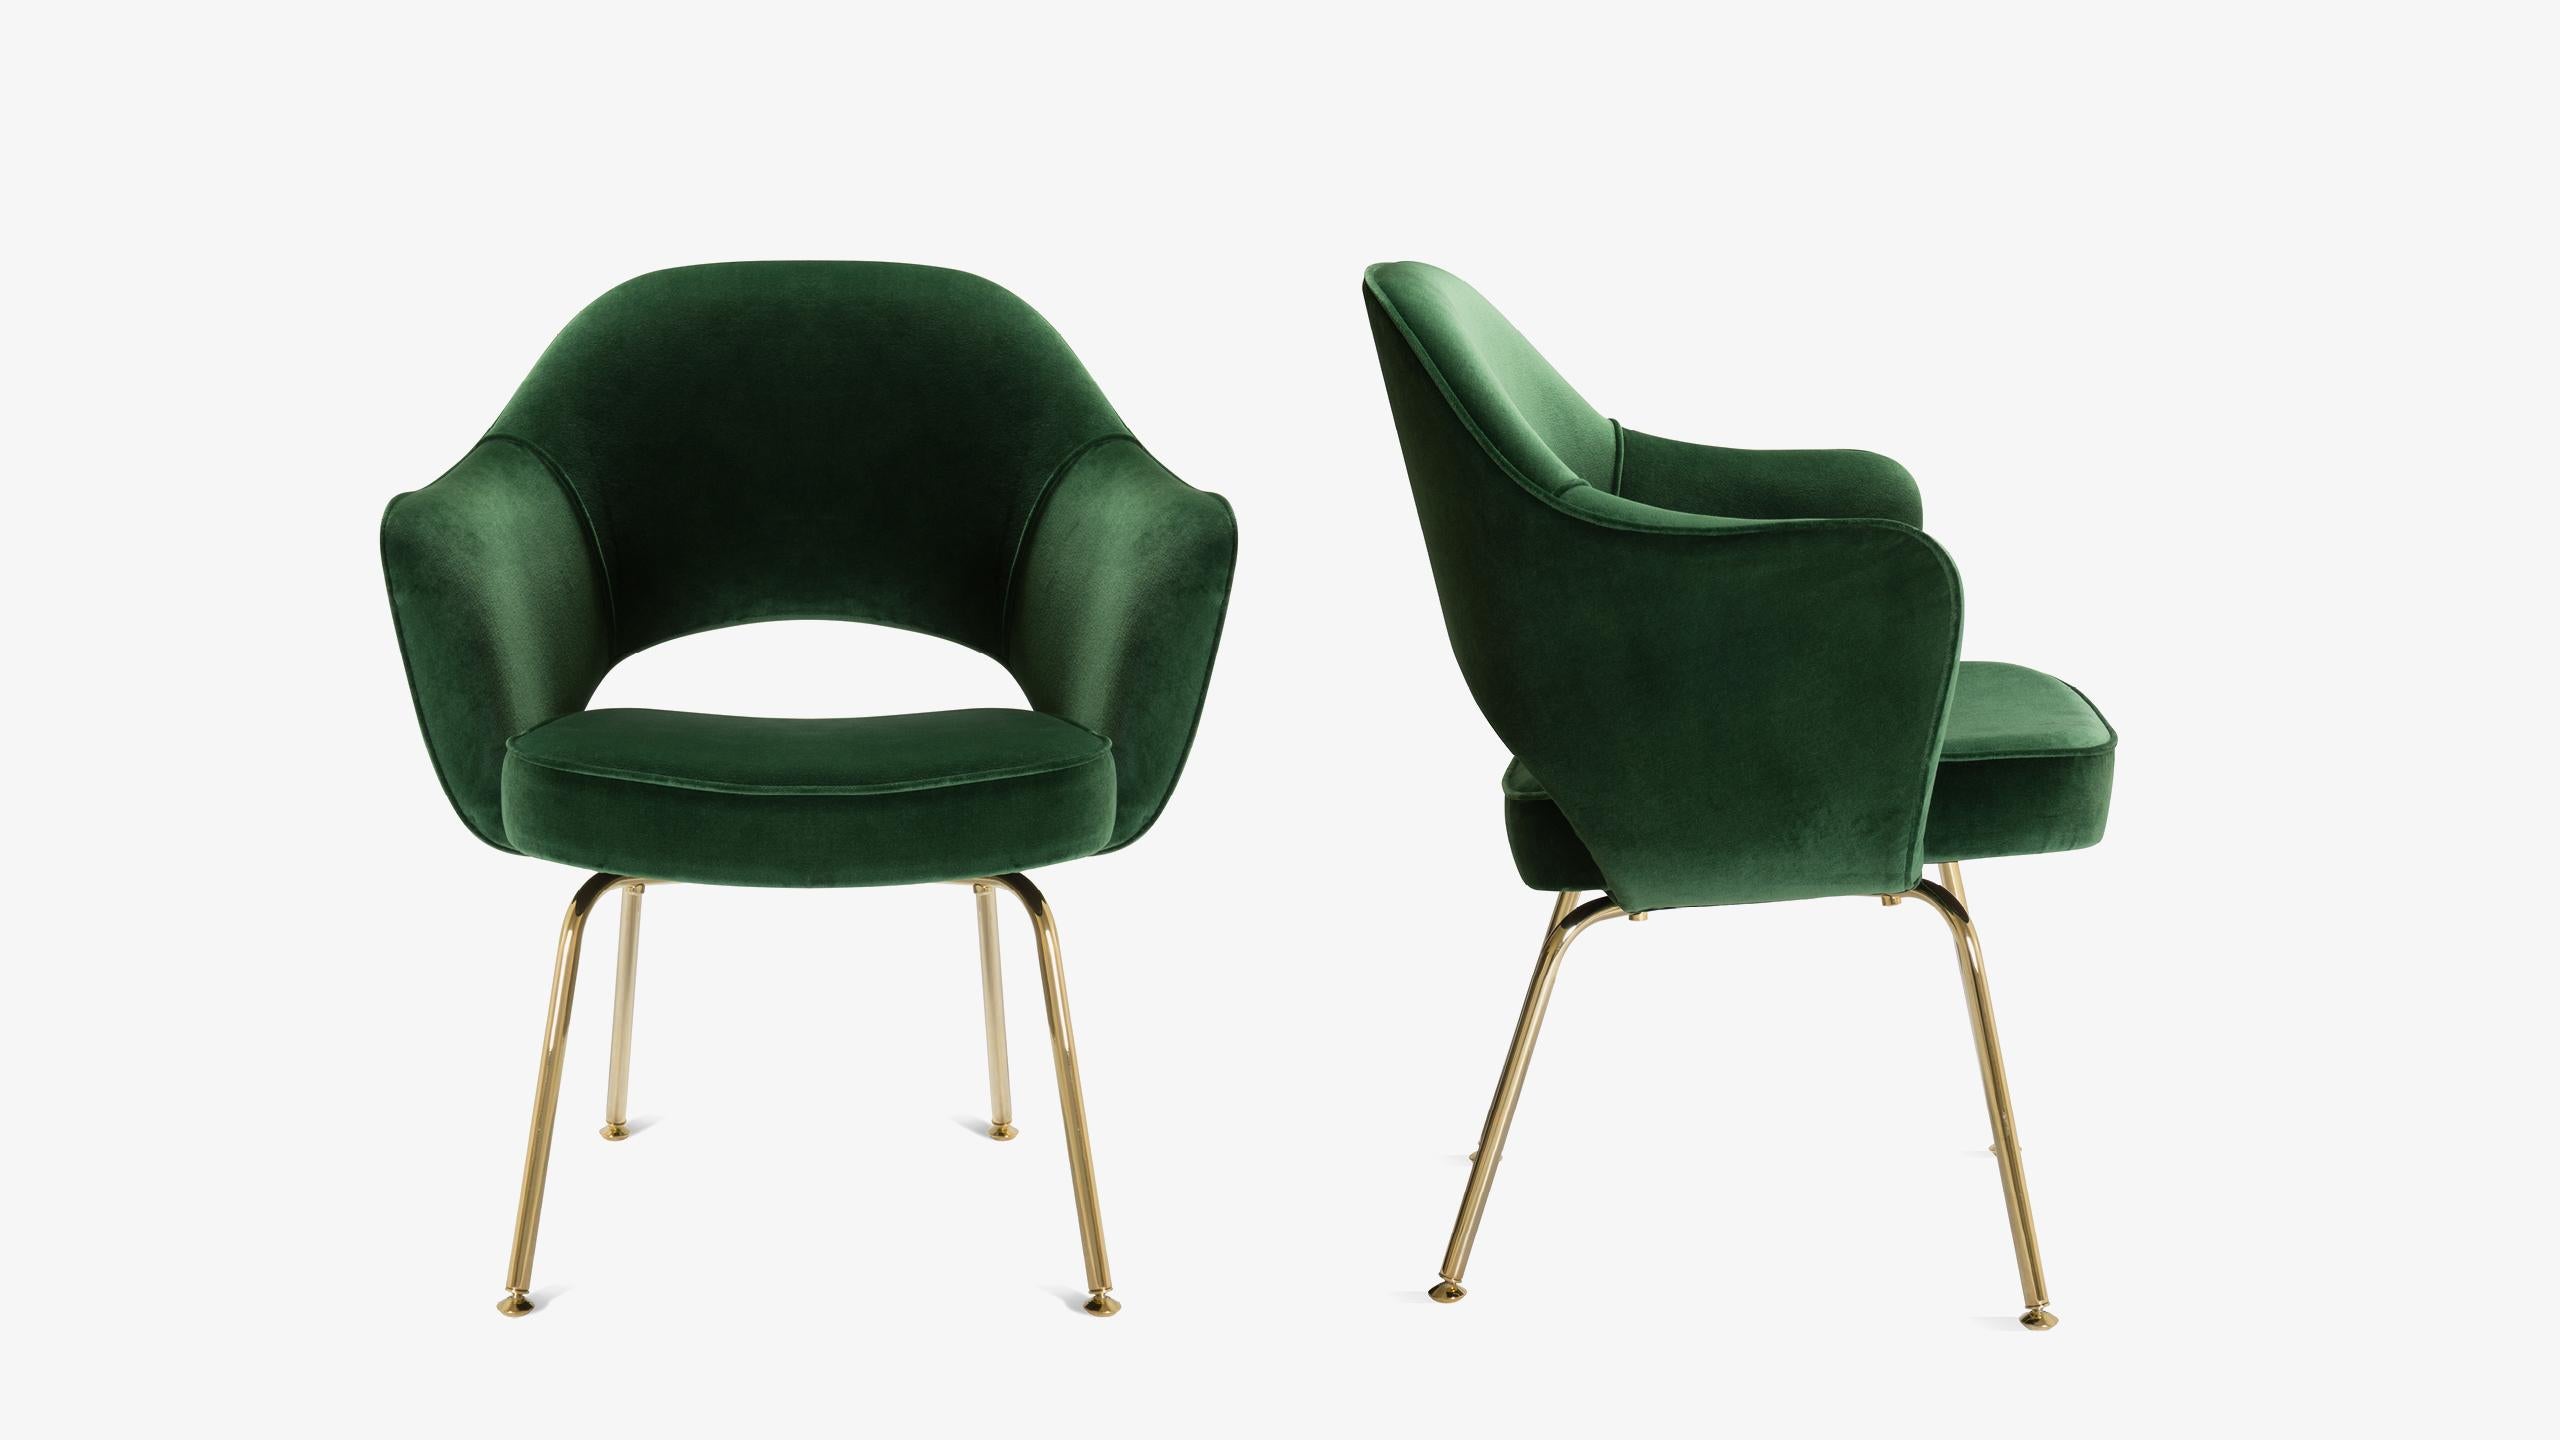 La nouvelle génération des célèbres fauteuils de direction d'Eero Saarinen est arrivée. Il s'agit de fauteuils de direction 100% authentiques d'Eero Saarinen pour Knoll, entièrement restaurés avec une touche d'or supplémentaire.

Depuis des